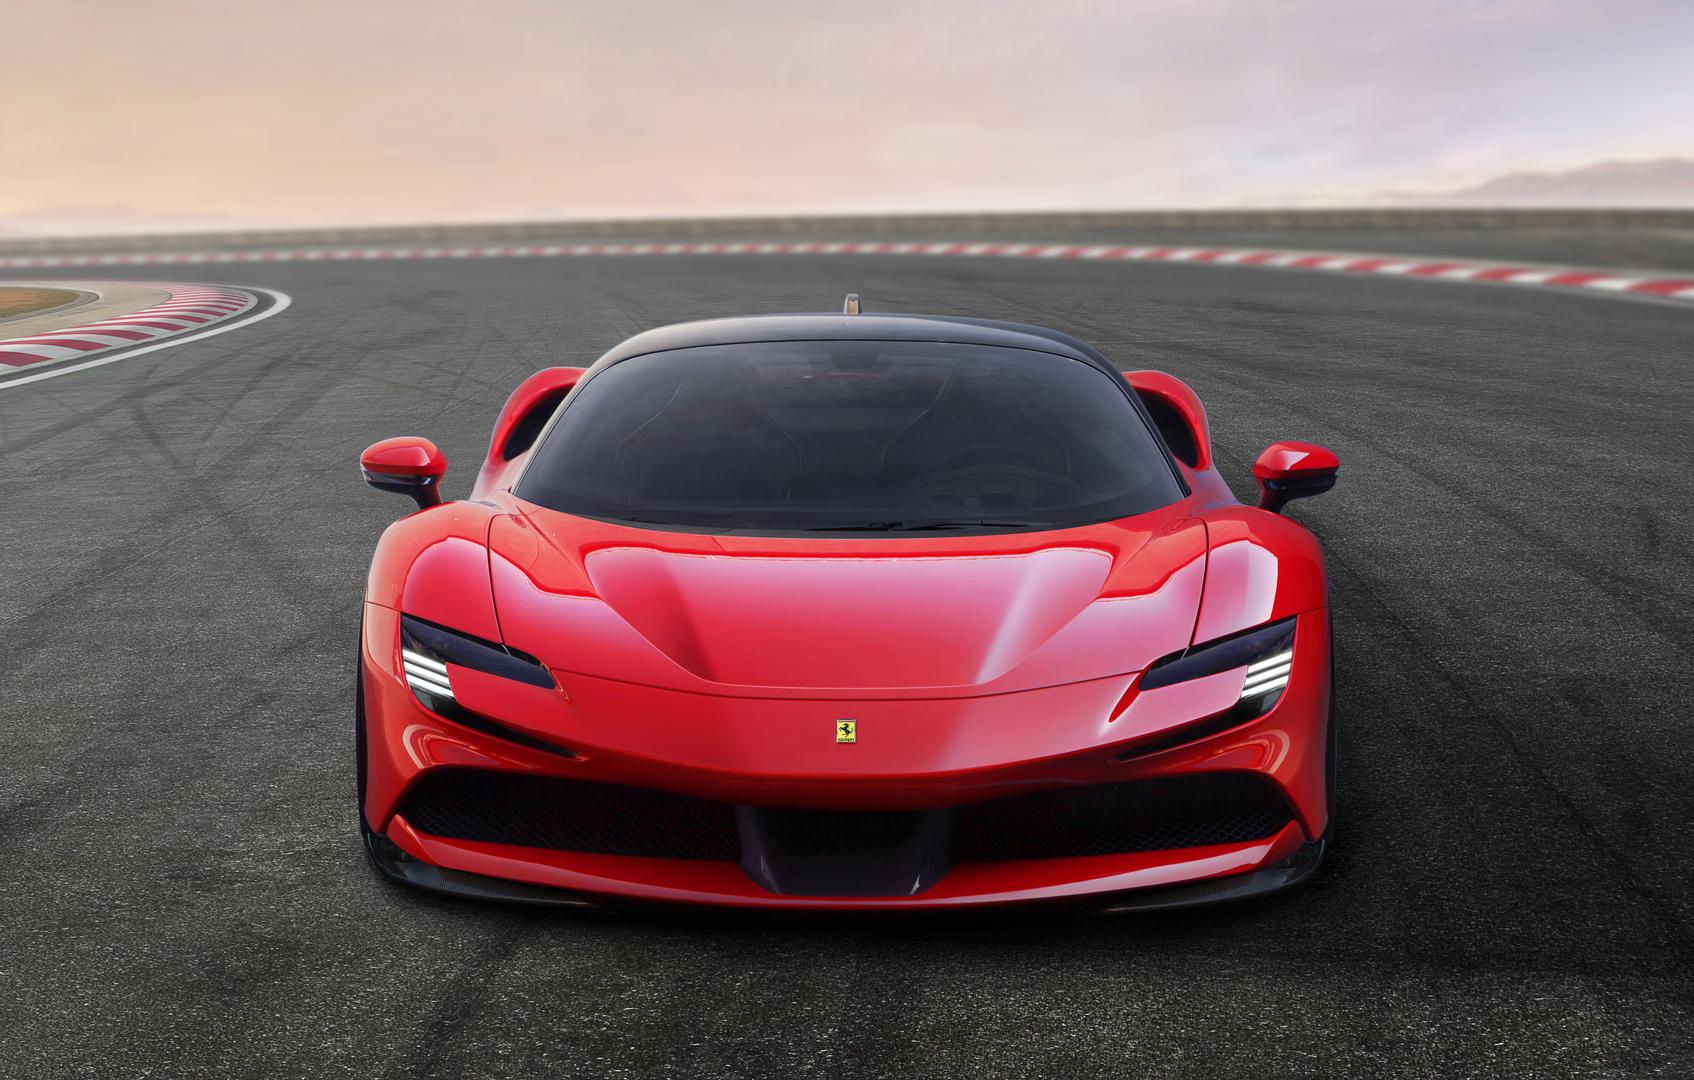 Ferrari je započeo novo poglavlje u svojoj povijesti. Predstavio je svoj prvi serijski PHEV (Plug-in Hybrid Electric Vehicle), model SF90 Stradale